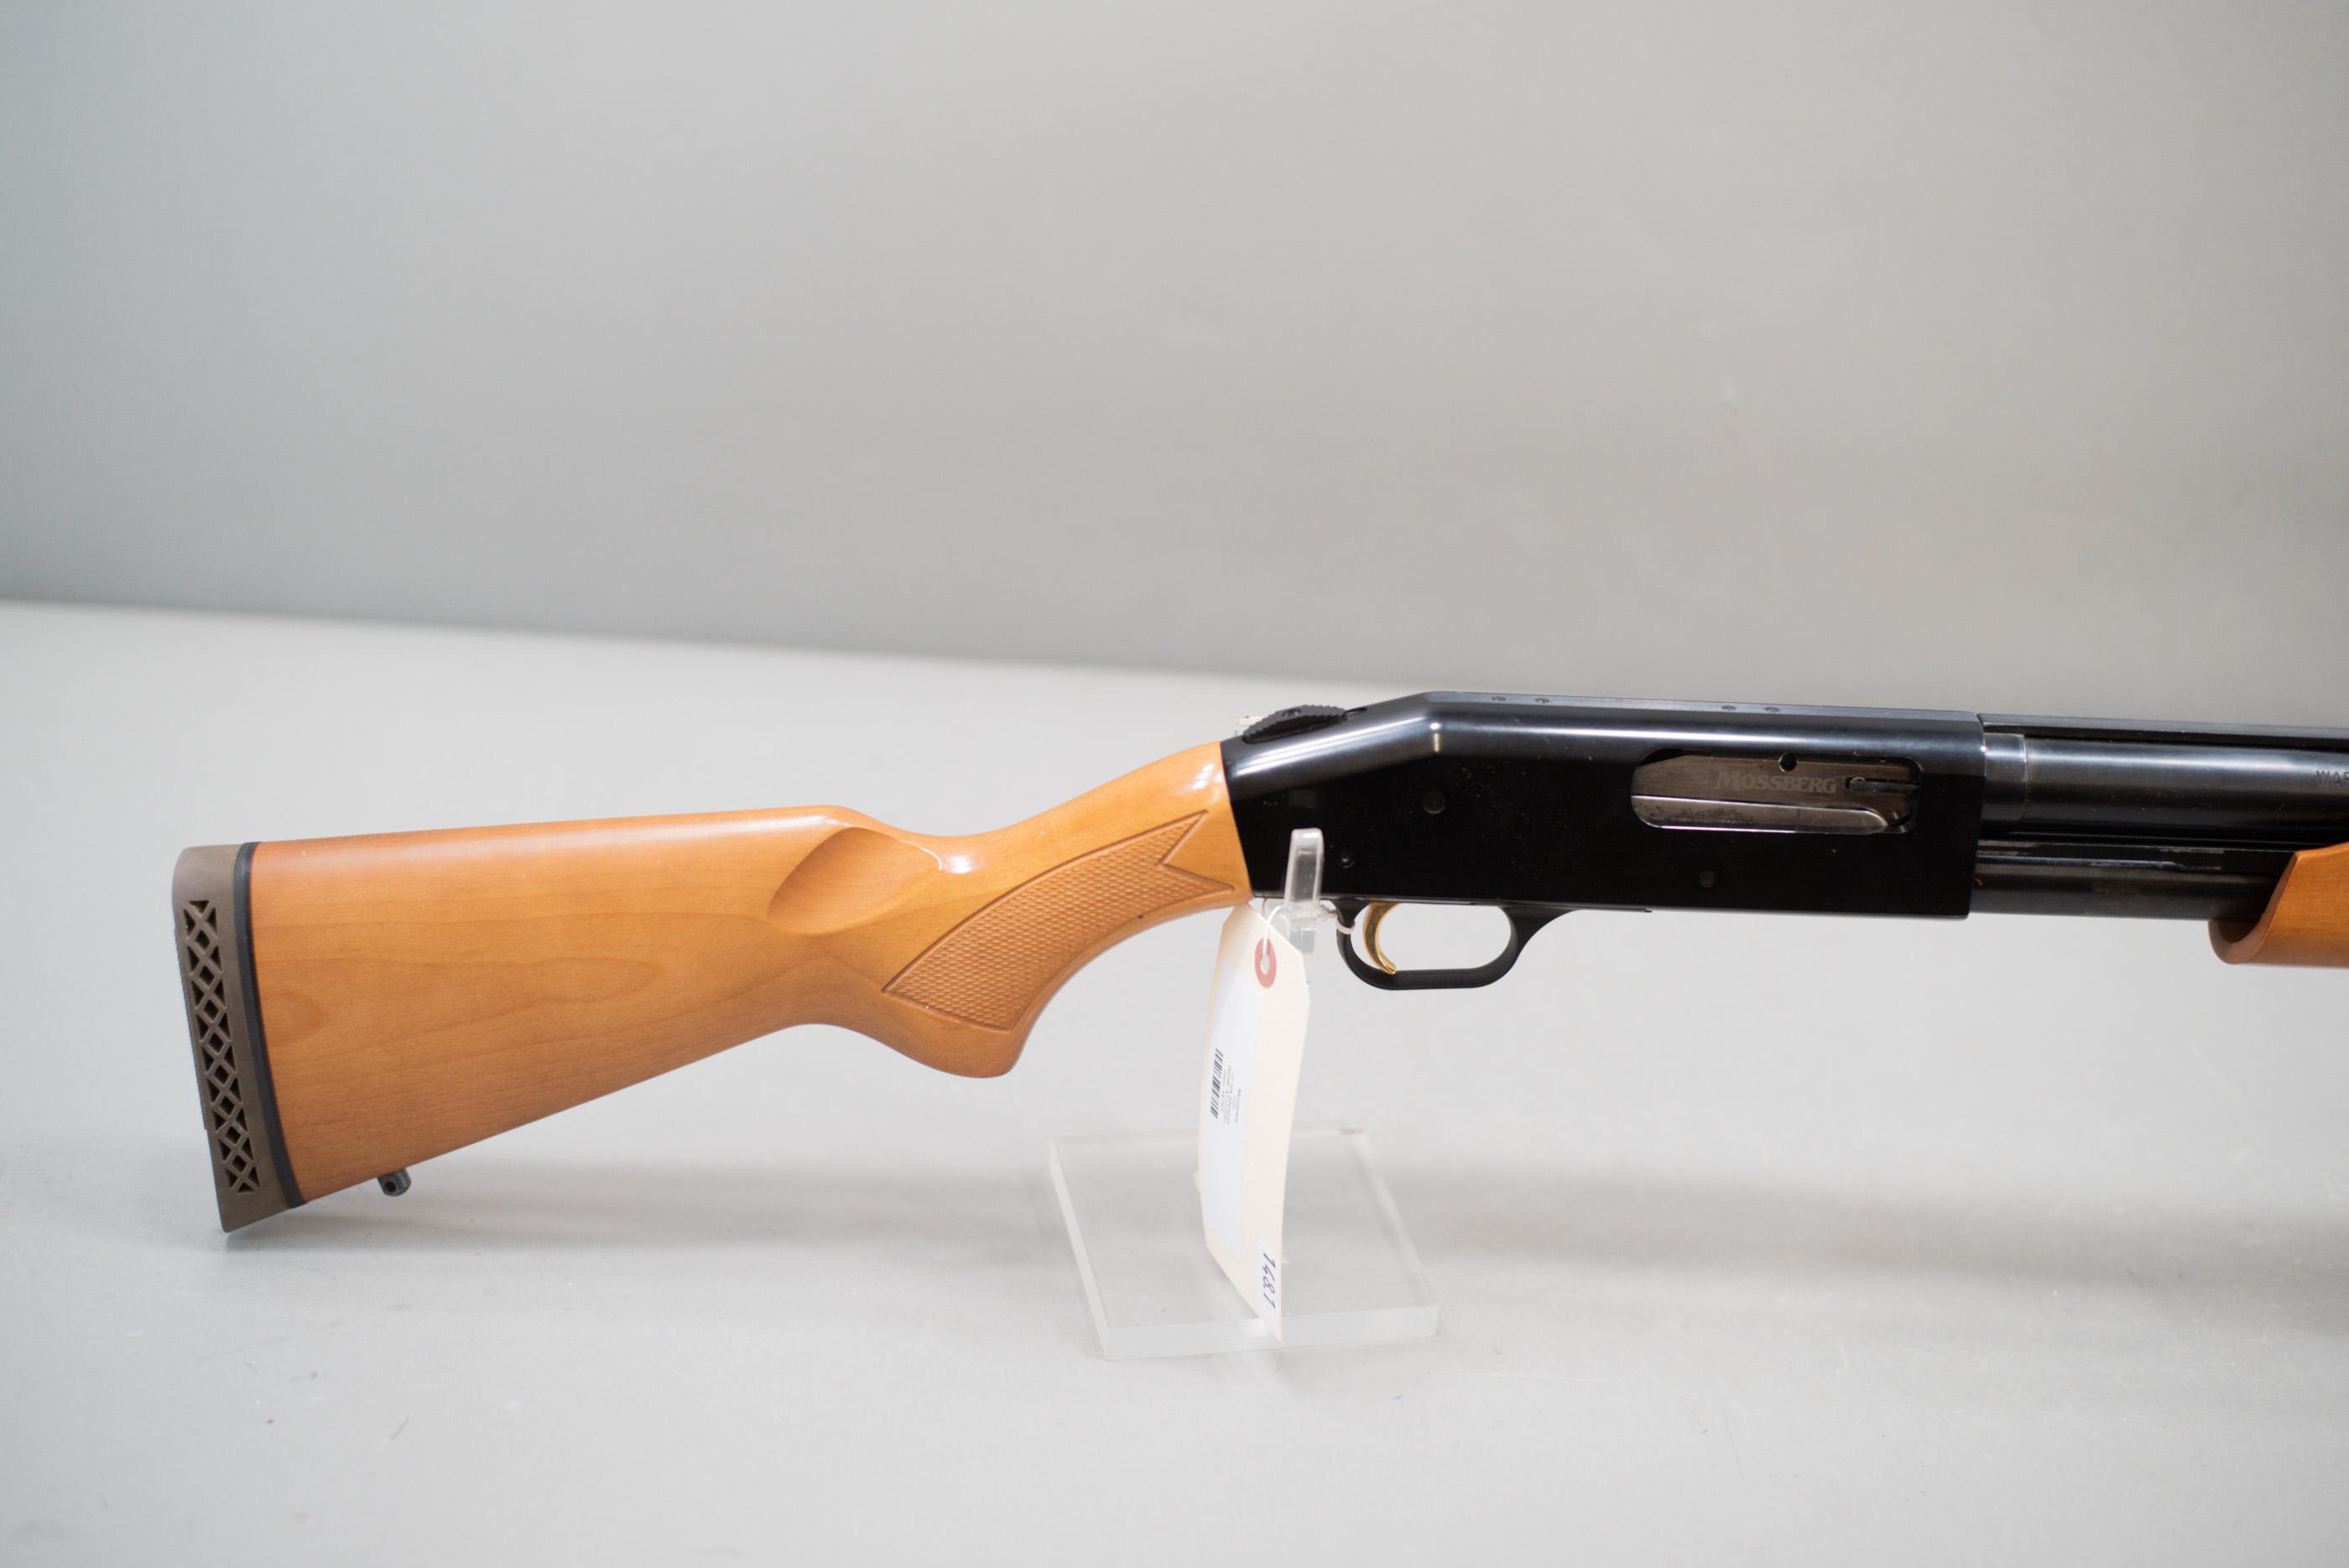 (R) Mossberg Model 535 12 Gauge Shotgun